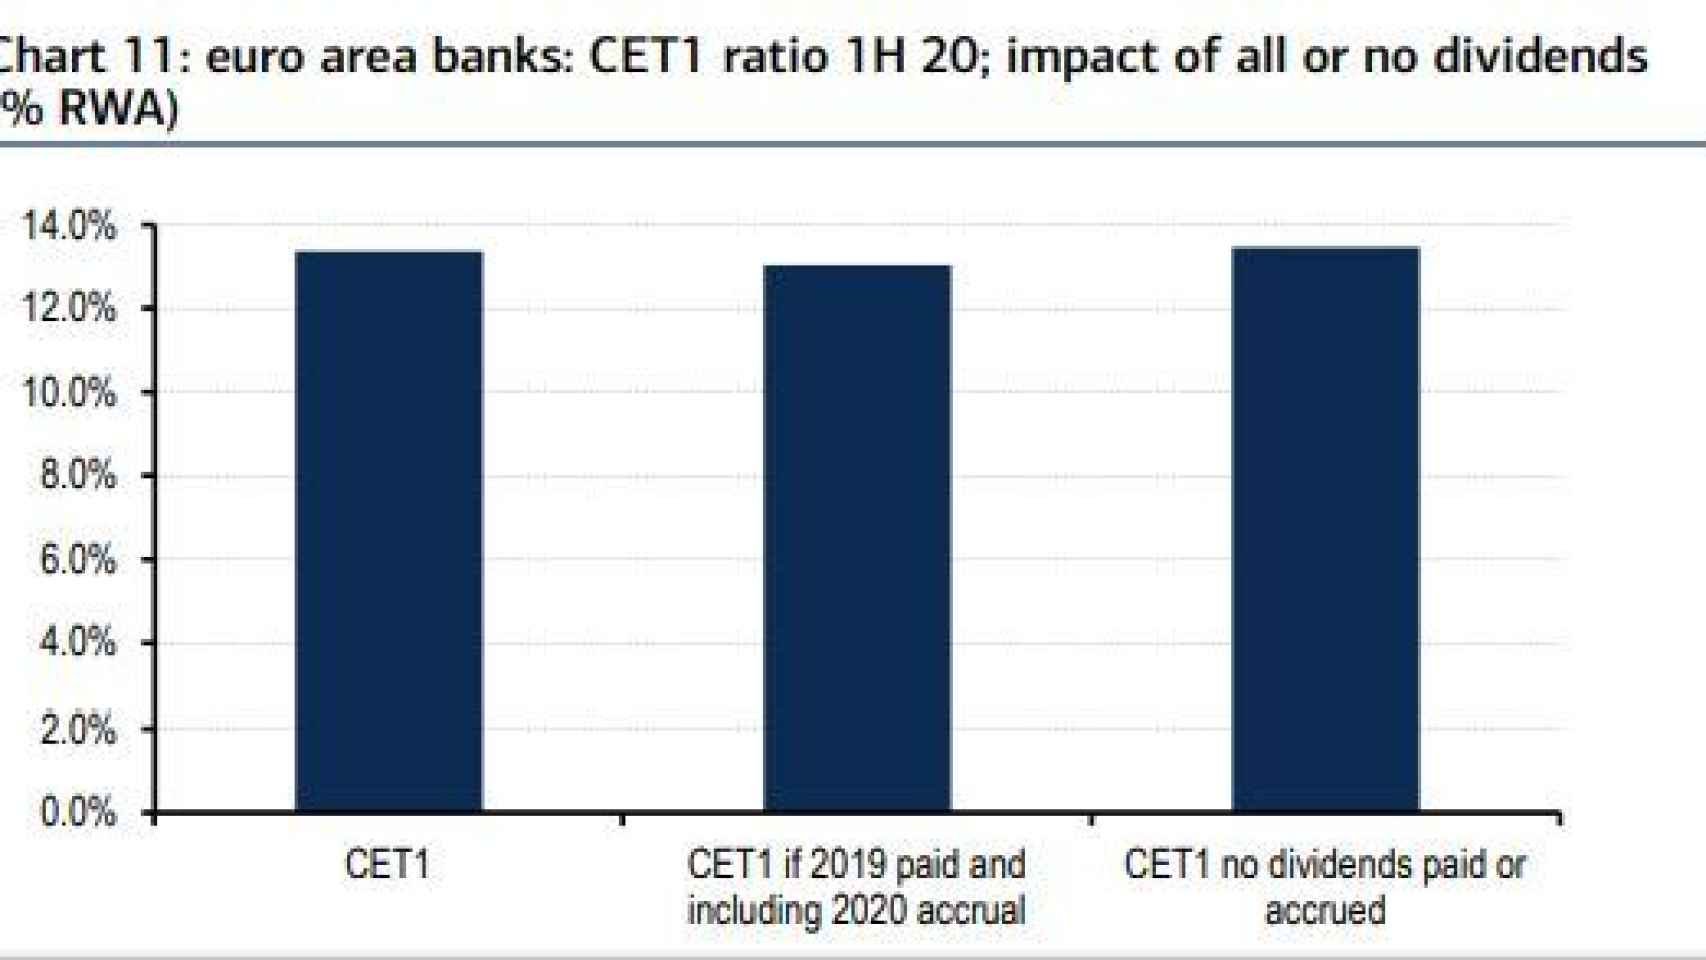 Impacto del veto al dividendo sobre el capital de la banca europea.